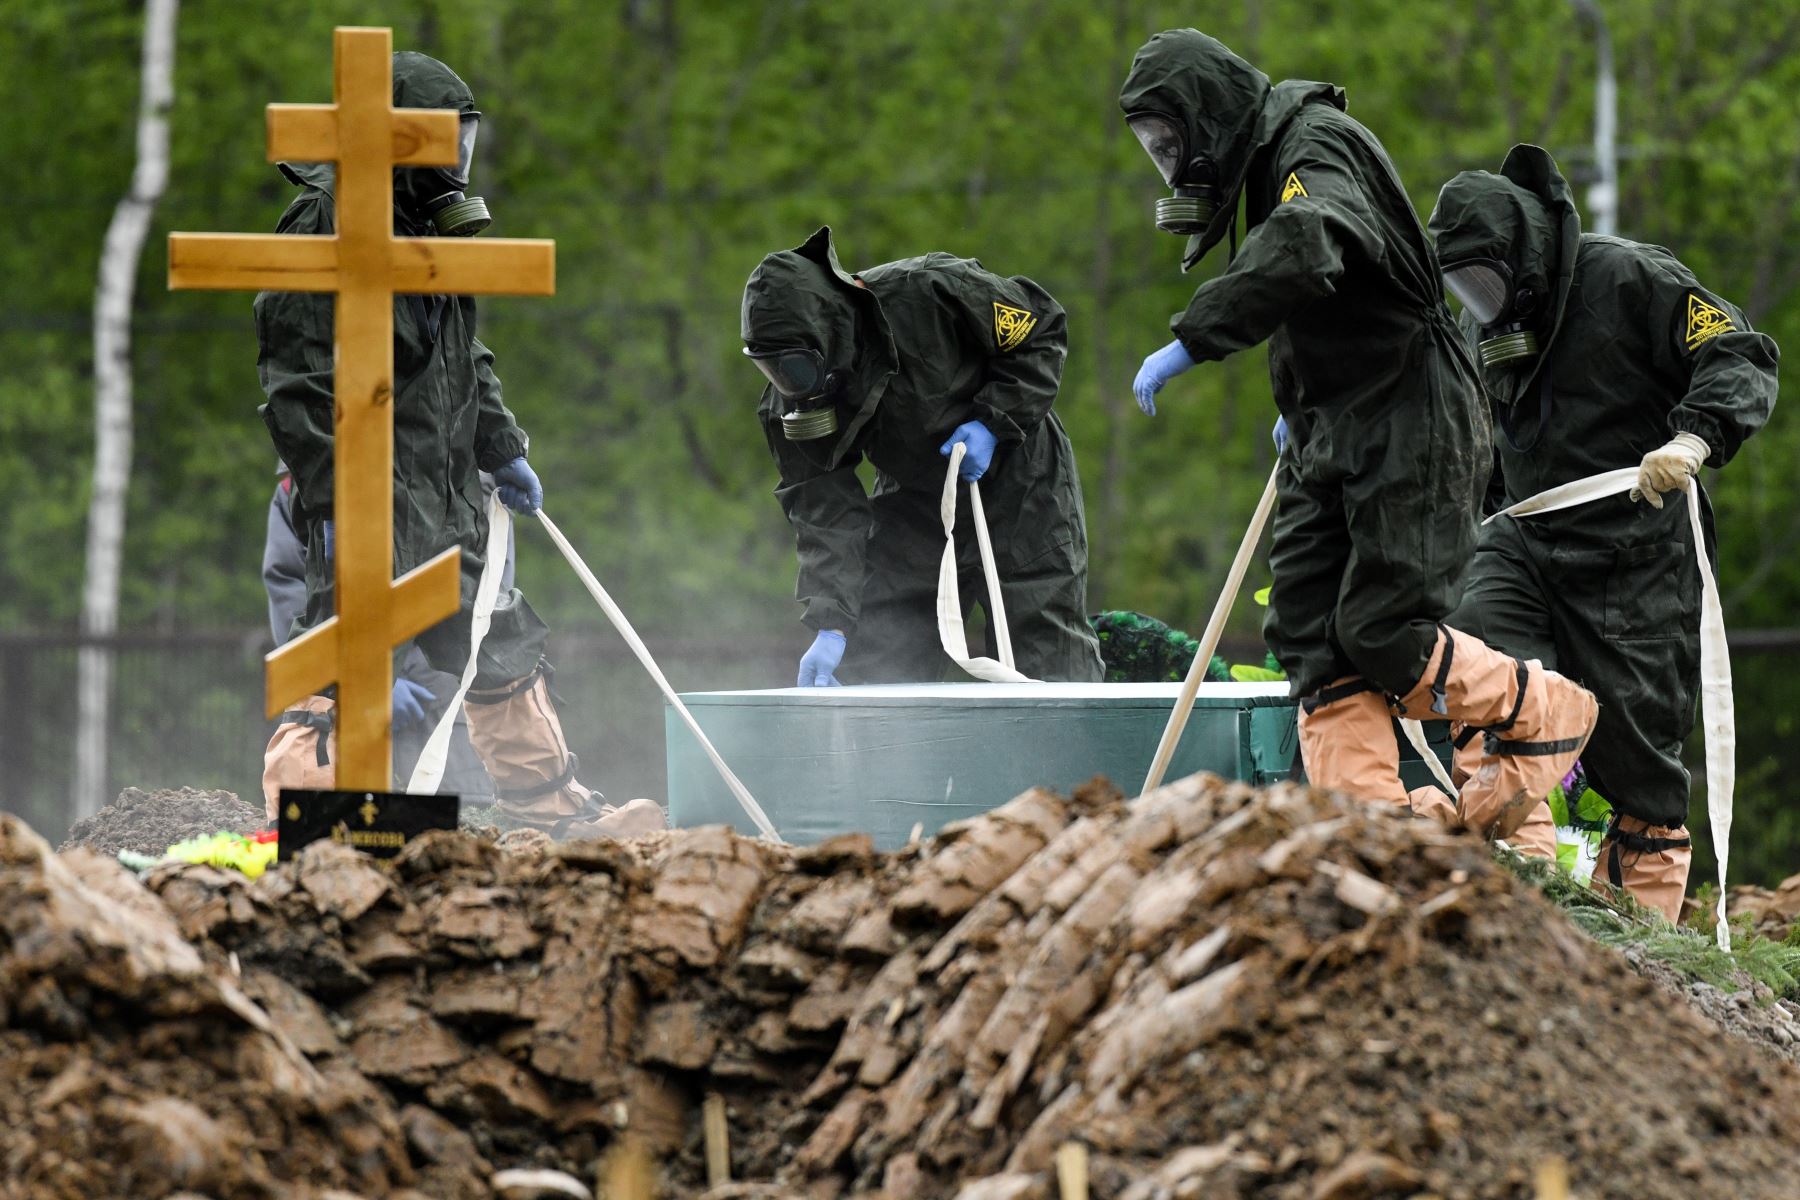 Los trabajadores del cementerio que usan equipo de protección entierran a una víctima de coronavirus en un cementerio en las afueras de Moscú. Foto: AFP